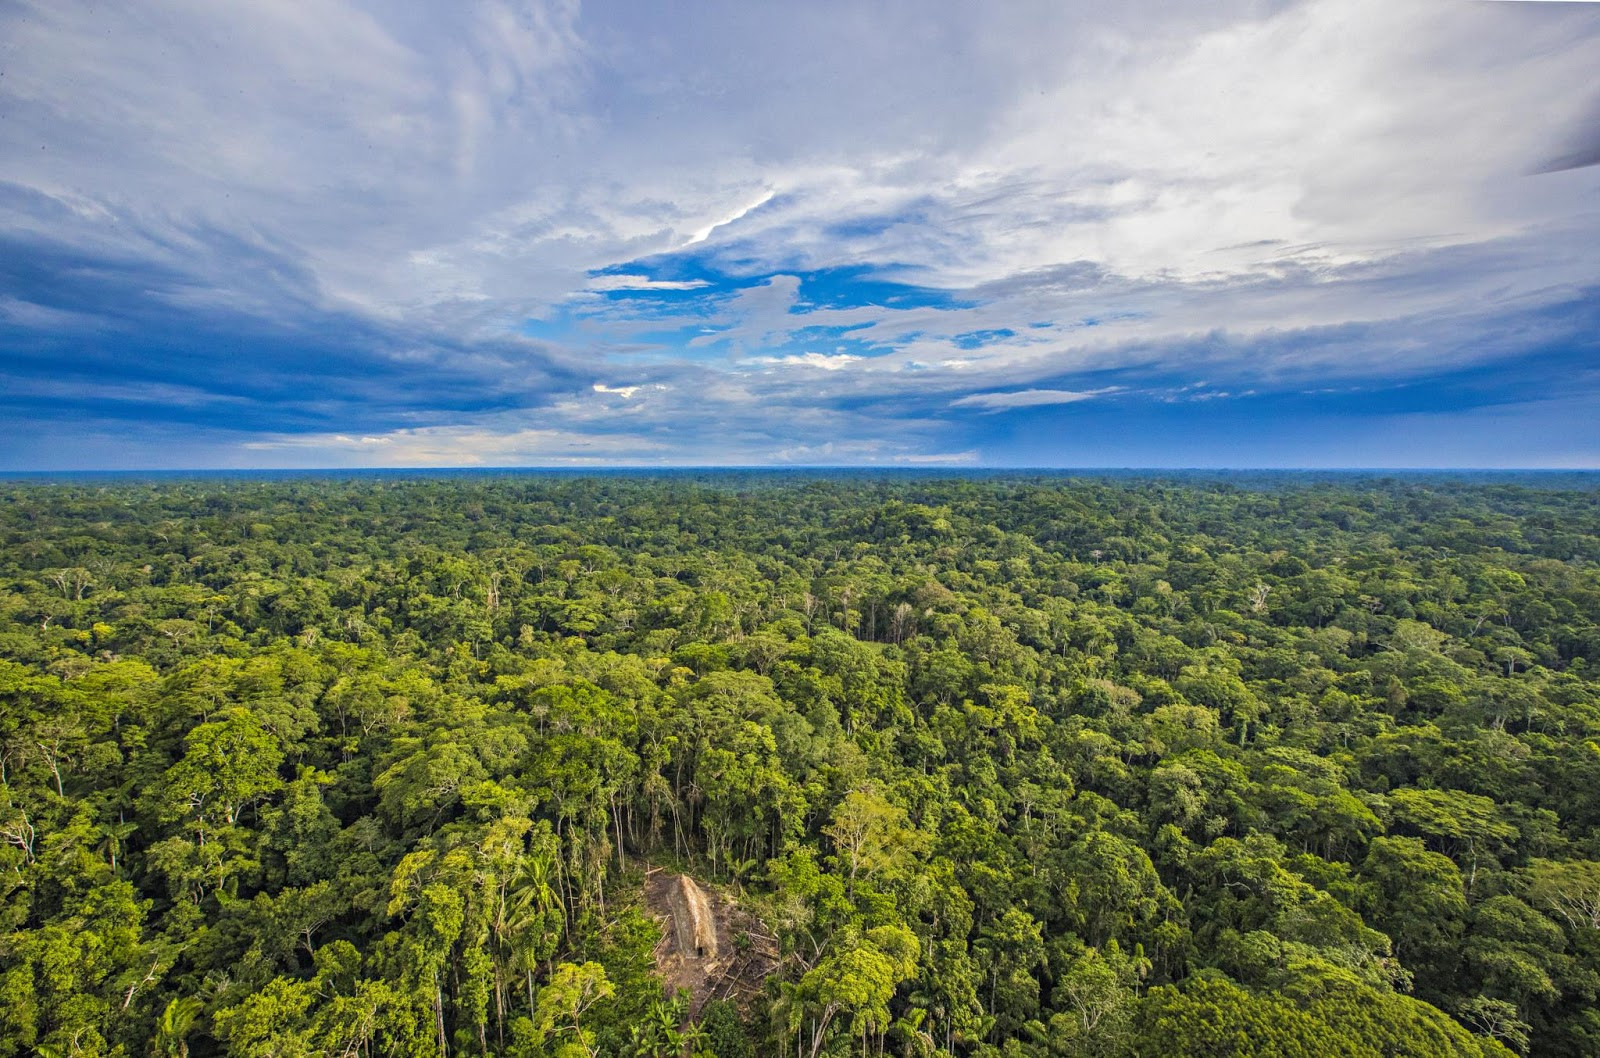 亚马逊热带雨林是世界最大的森林,居住在玻利维亚丛林里的提斯曼人,是